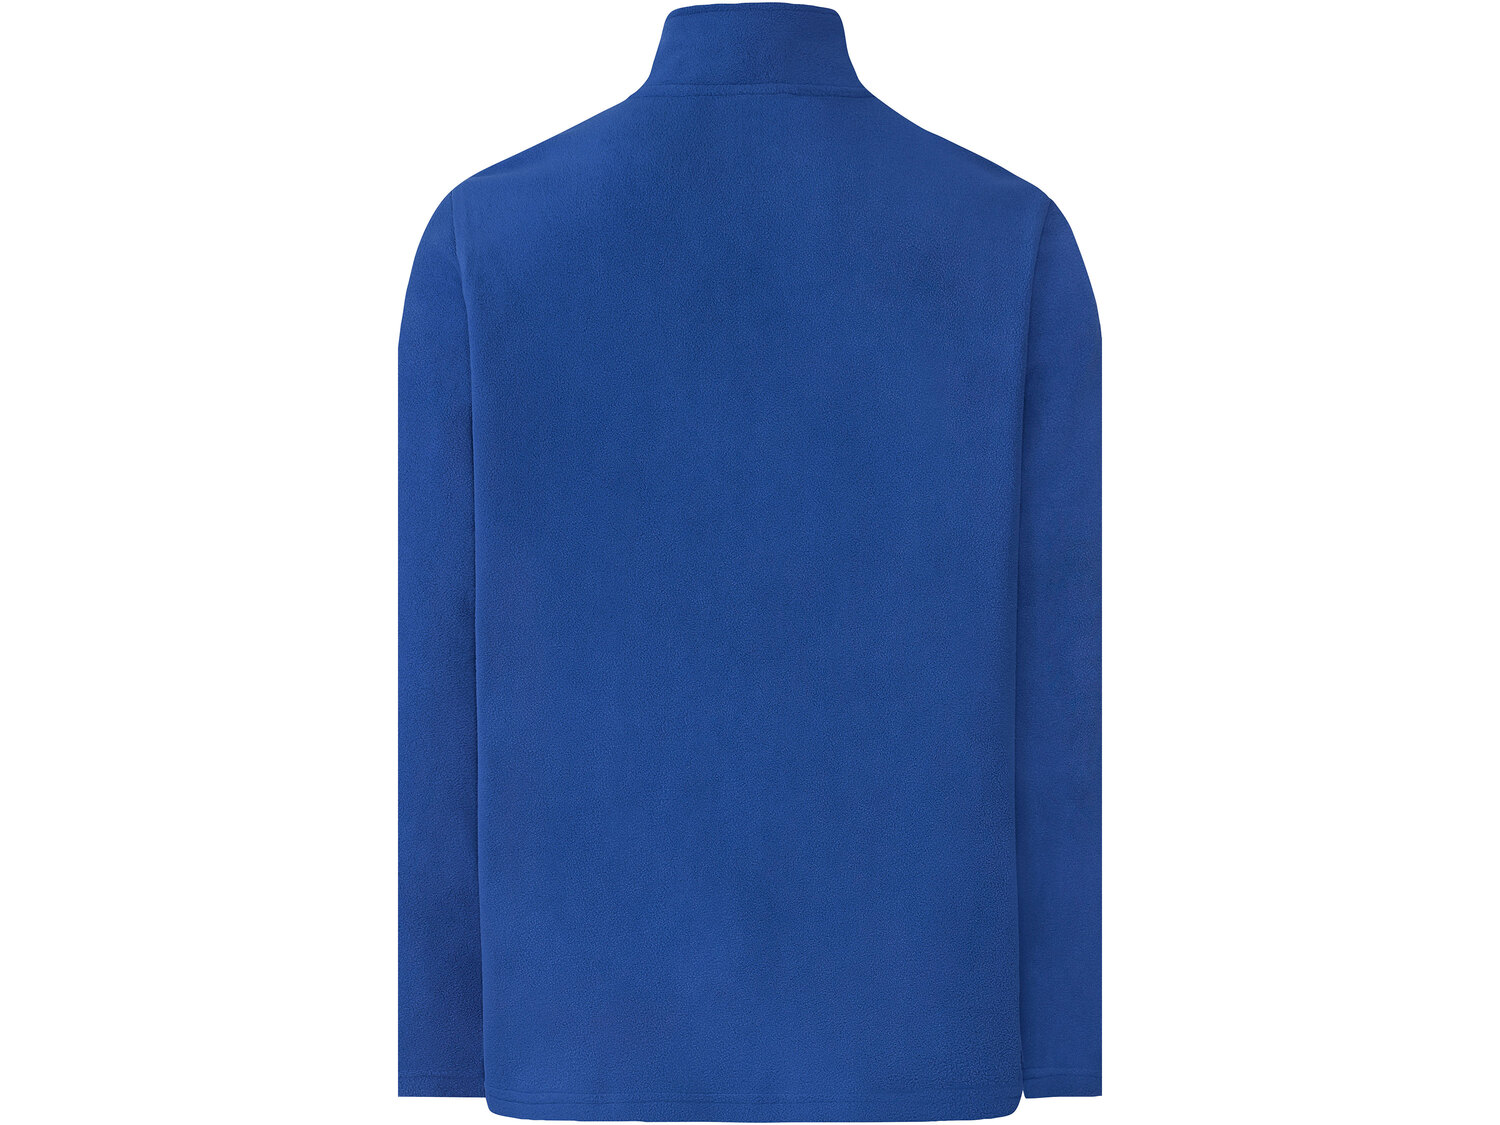 Bluza polarowa męska , cena 34,99 PLN 
- rozmiary: M-XXL
- Proces barwienia zużywający ...